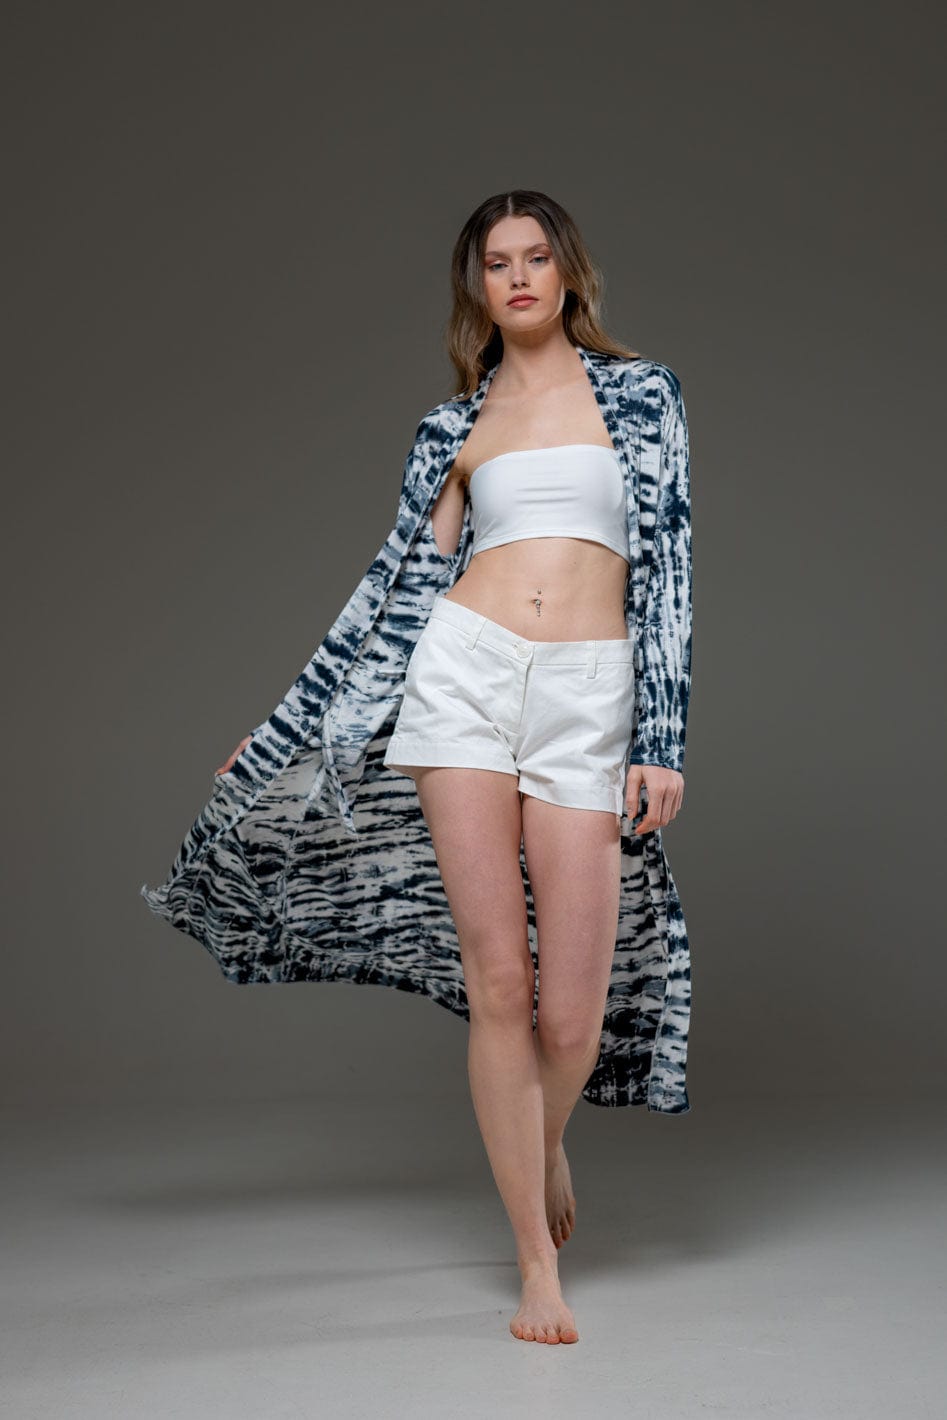 Elastic rayon Stripe Design Tie Dye Pattern Elegant Chic Long Sleeve Long Open Jacket